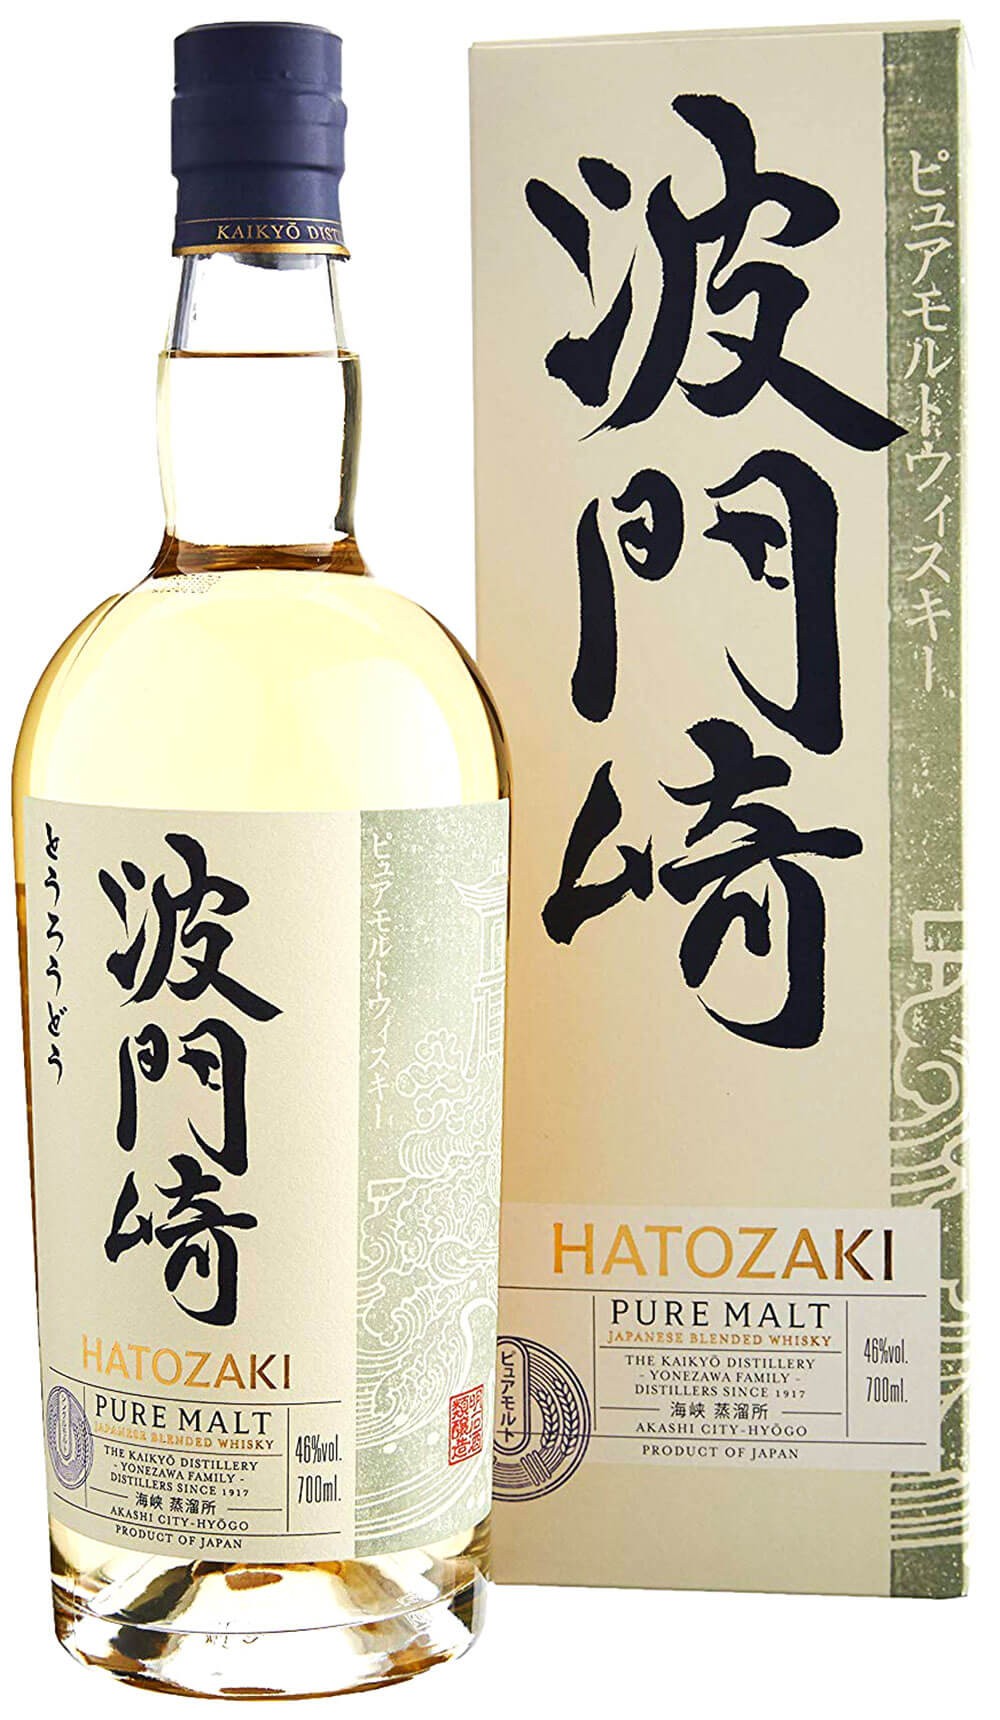 whisky kaikyo hatozaki malt with cl.70 case